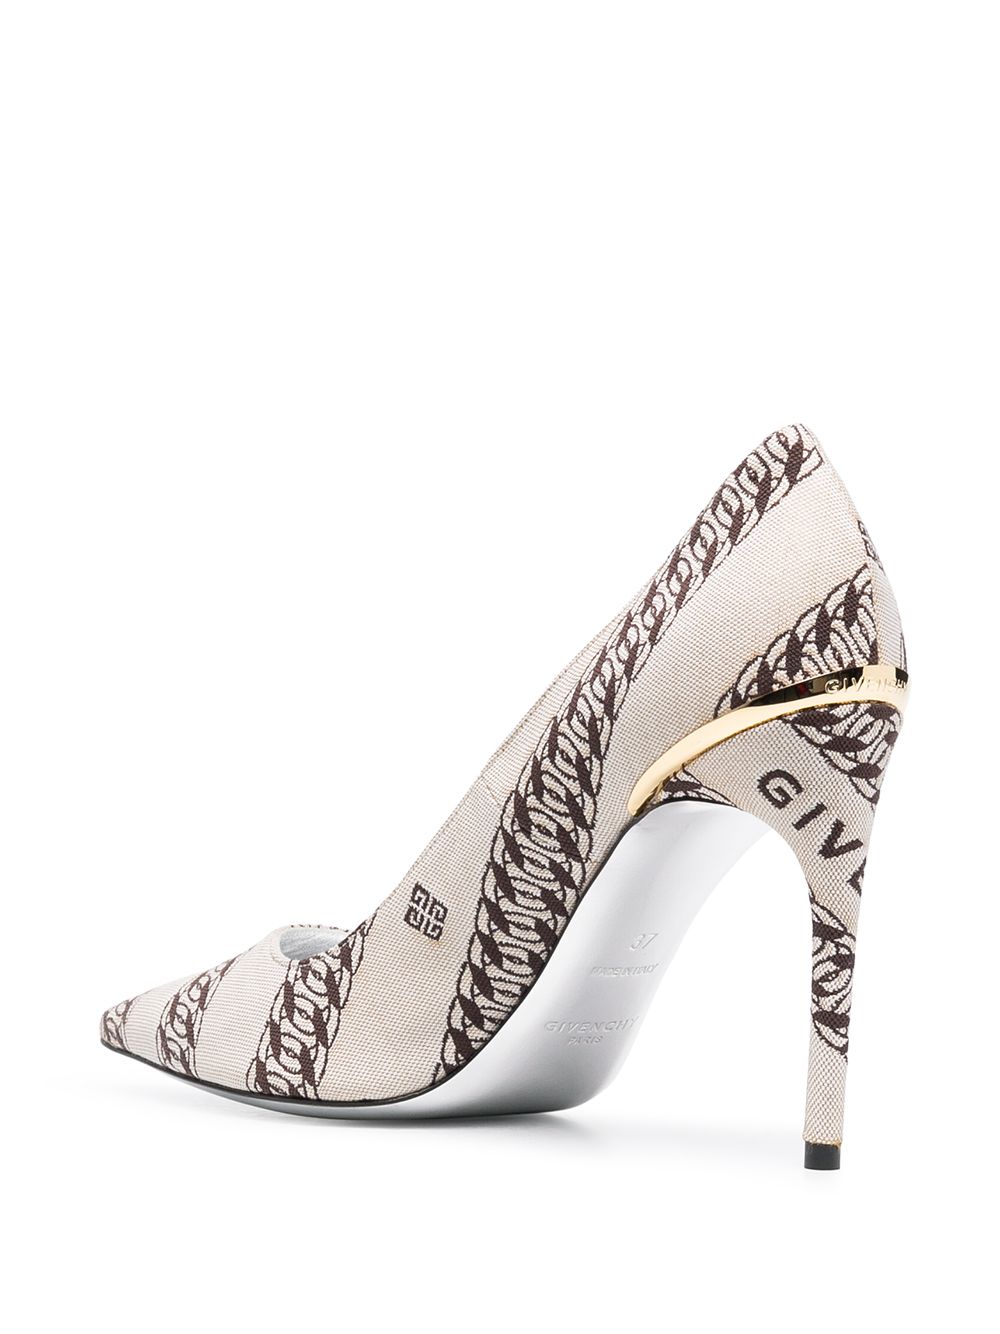 фото Givenchy туфли с заостренным носком и принтом